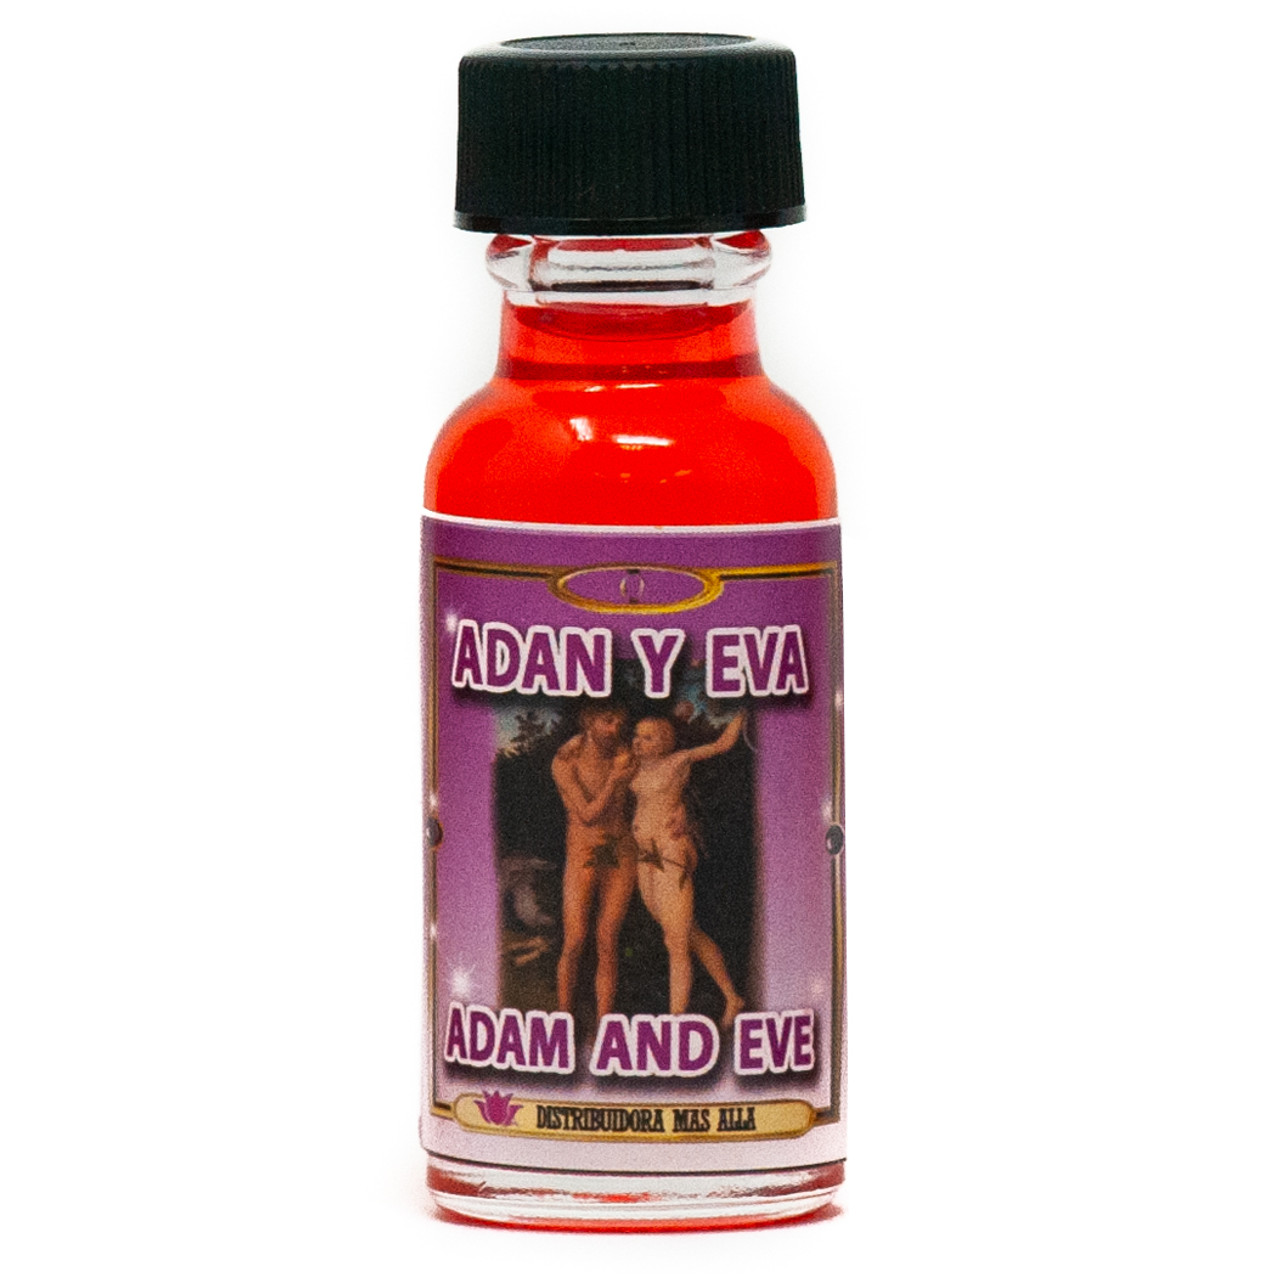 Aceite Adan Y Eva - Ritual Oil -